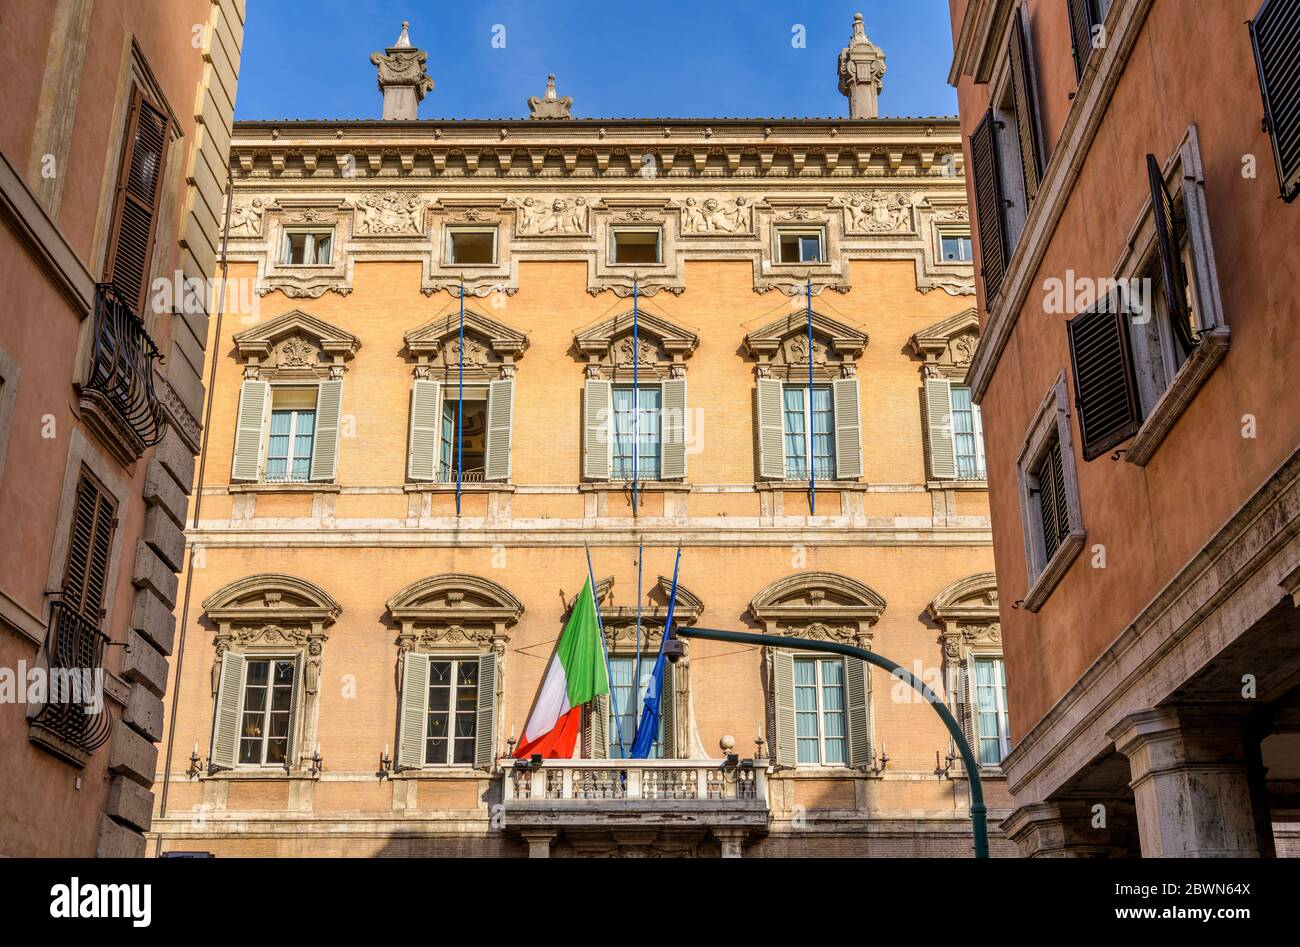 Palazzo Madama - Vista a basso angolo della façade parte alta del Palazzo Madama, un palazzo mediceo del XV secolo e ora sede del Senato italiano. Roma. Foto Stock